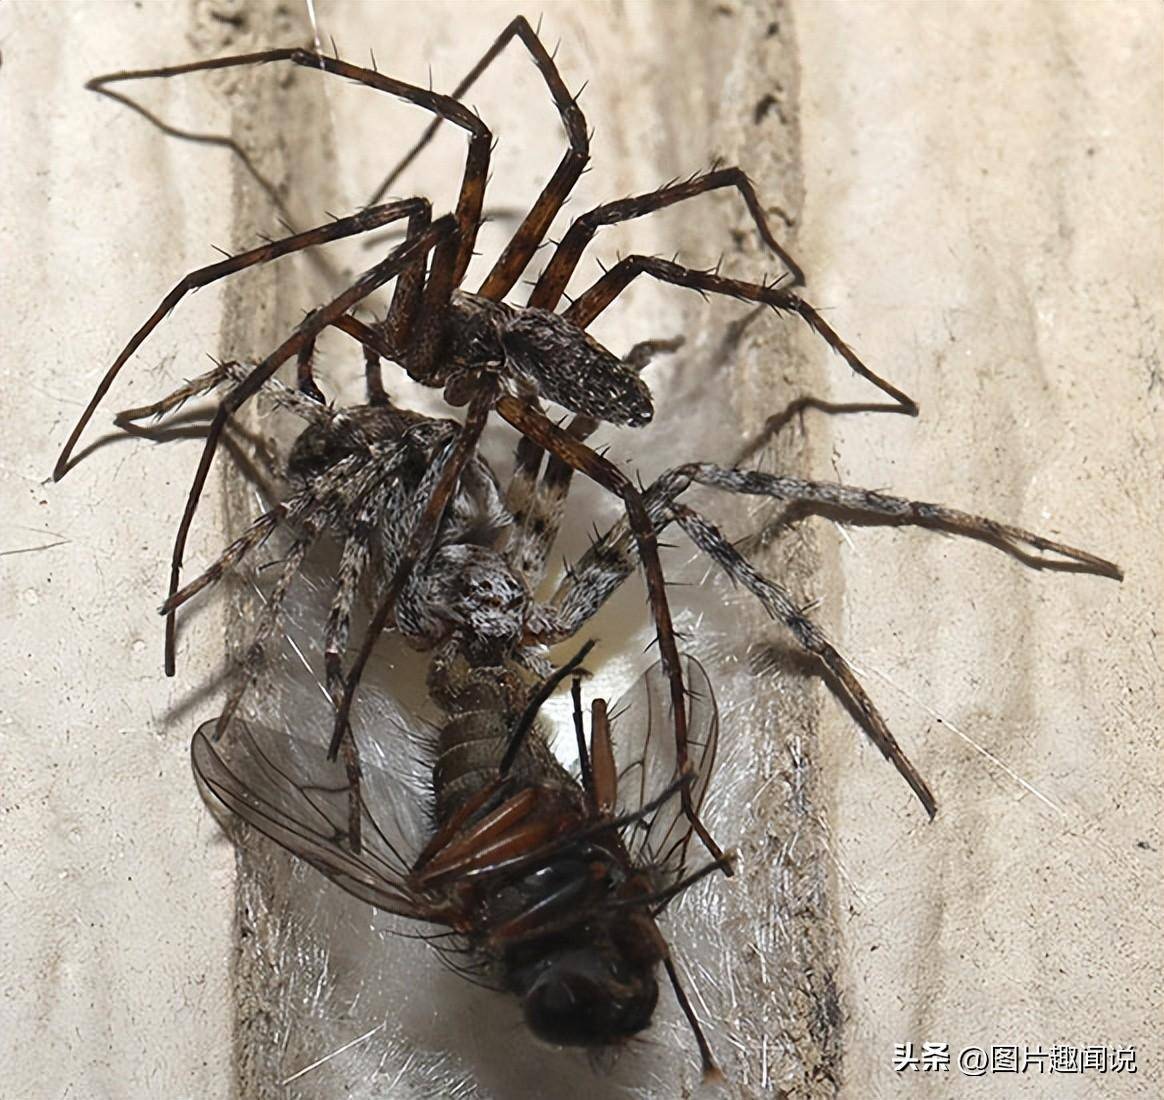 罕见照片展现大自然的残酷：交配中的蜘蛛不忘猎食，偷袭鸽子的豺